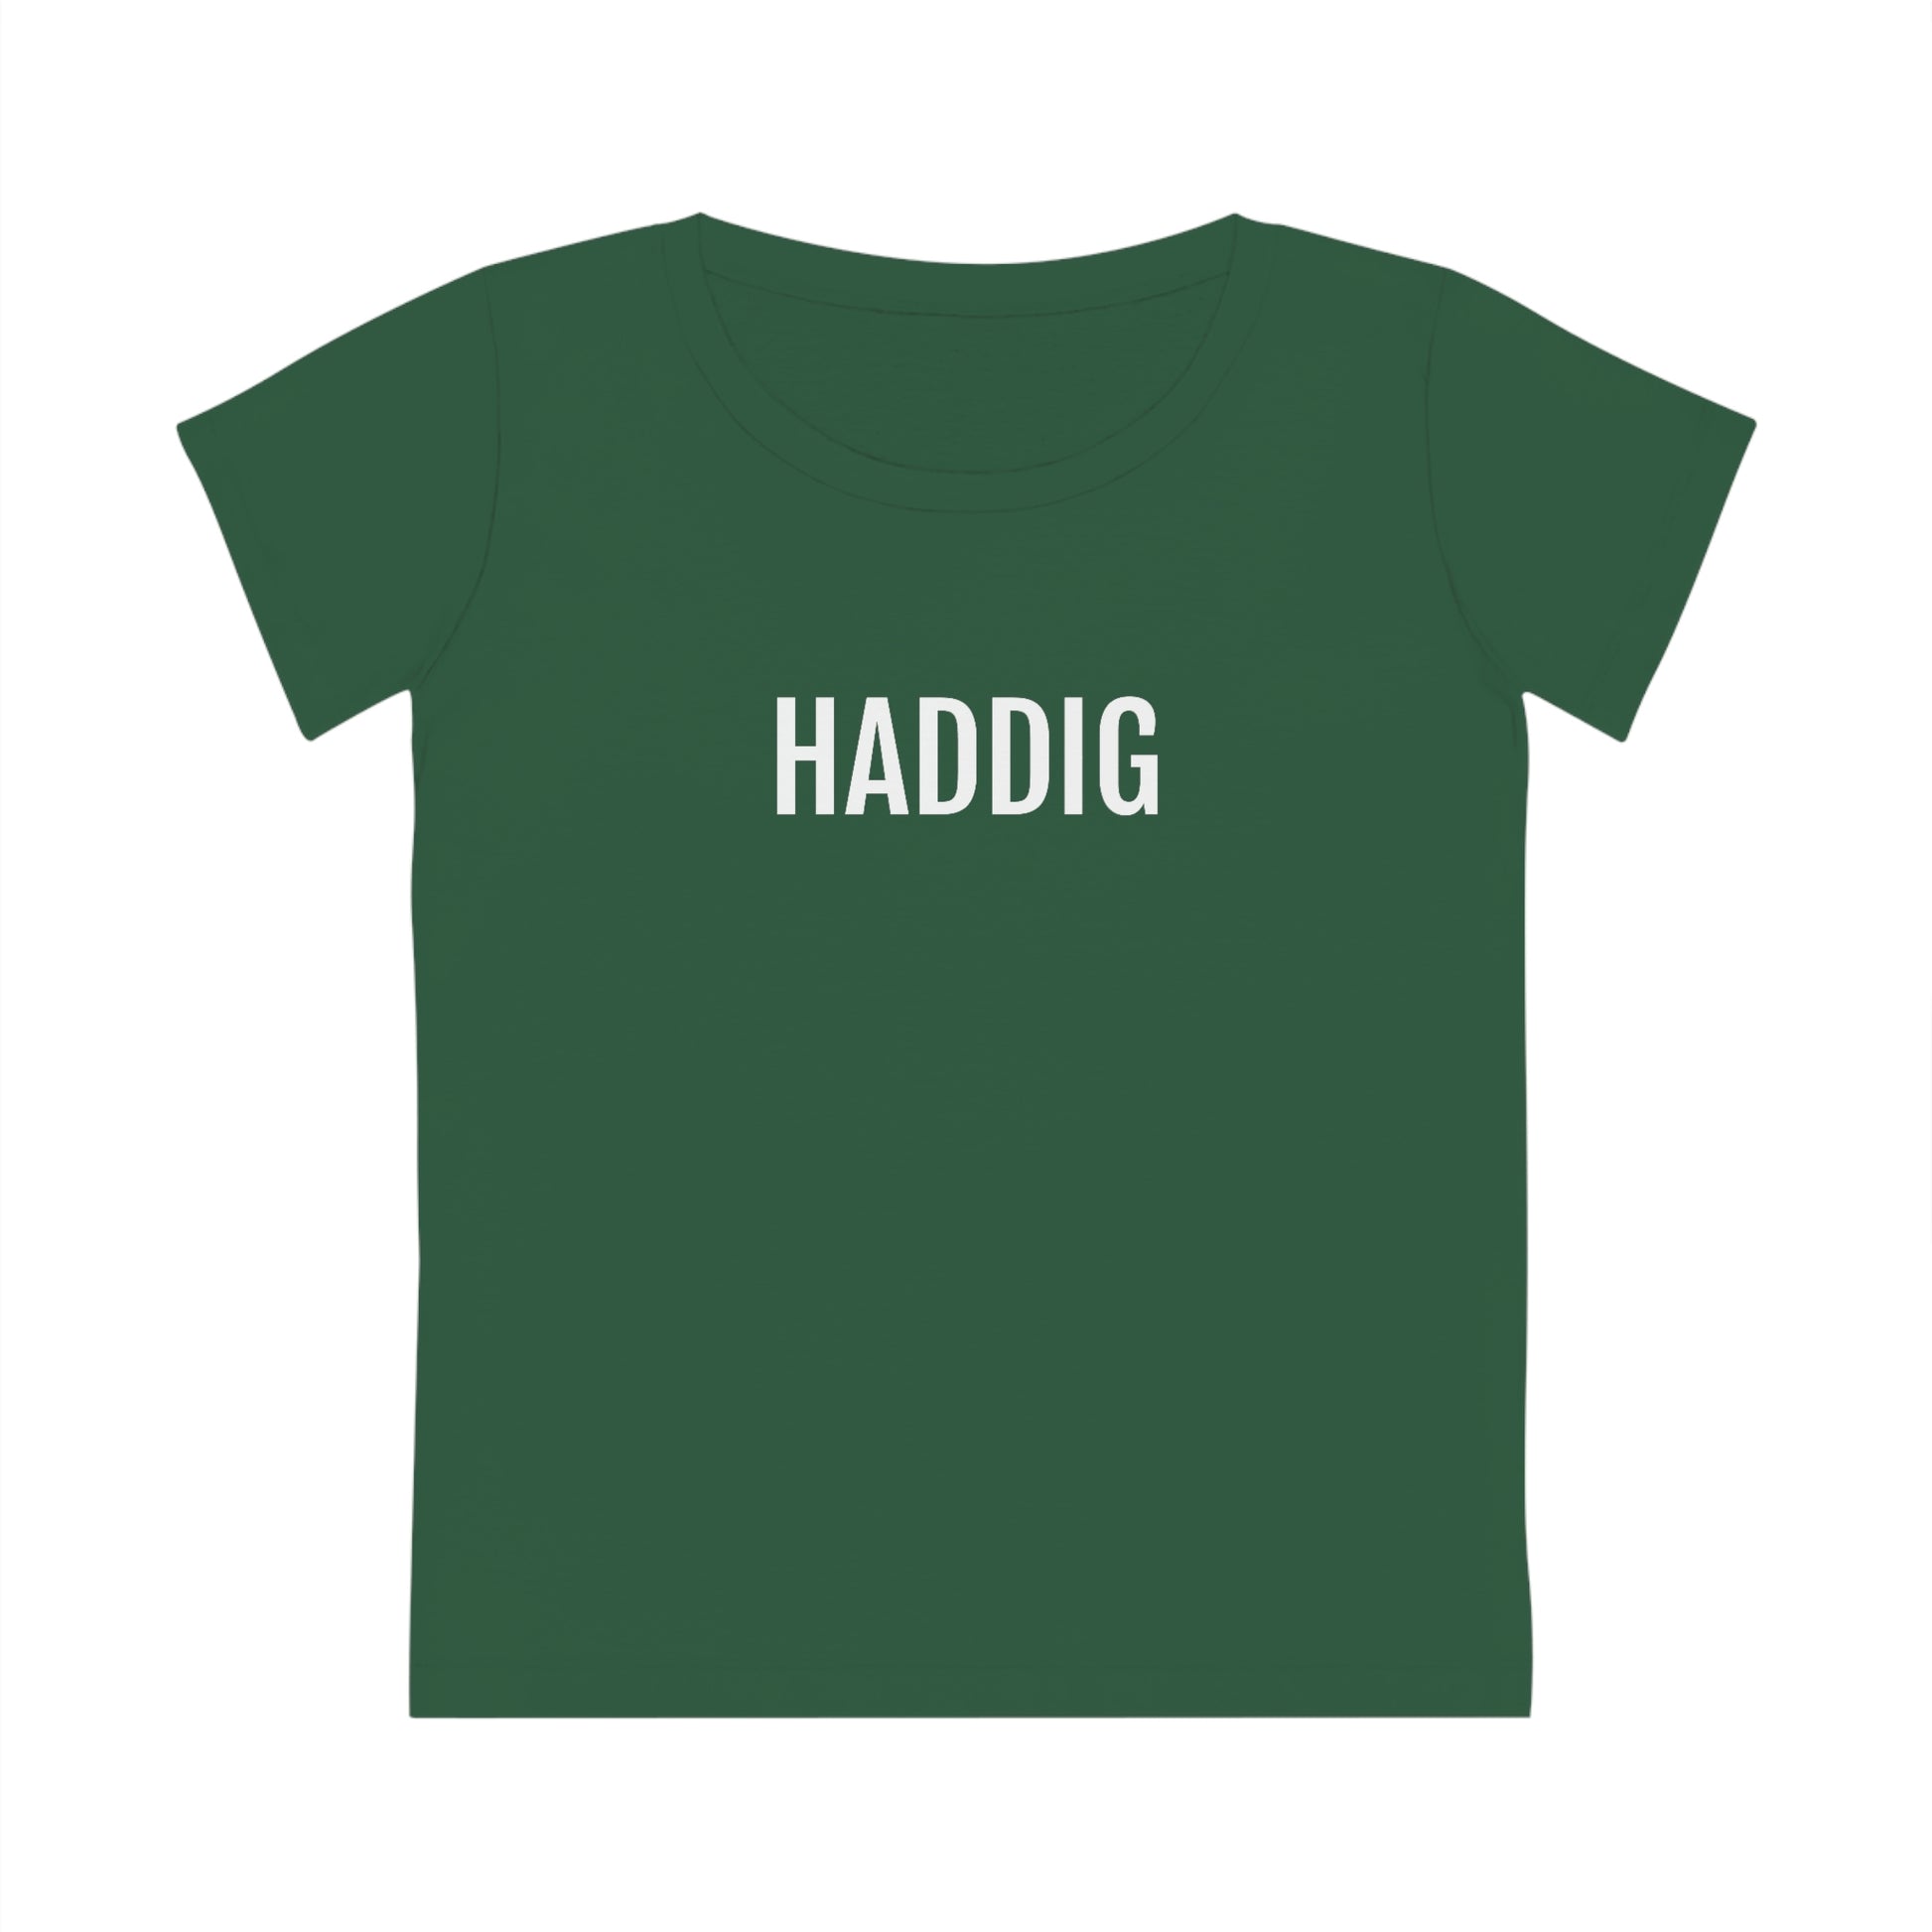 T-Shirt in groen voor vrouwen met Haddig in Limburgs dialect